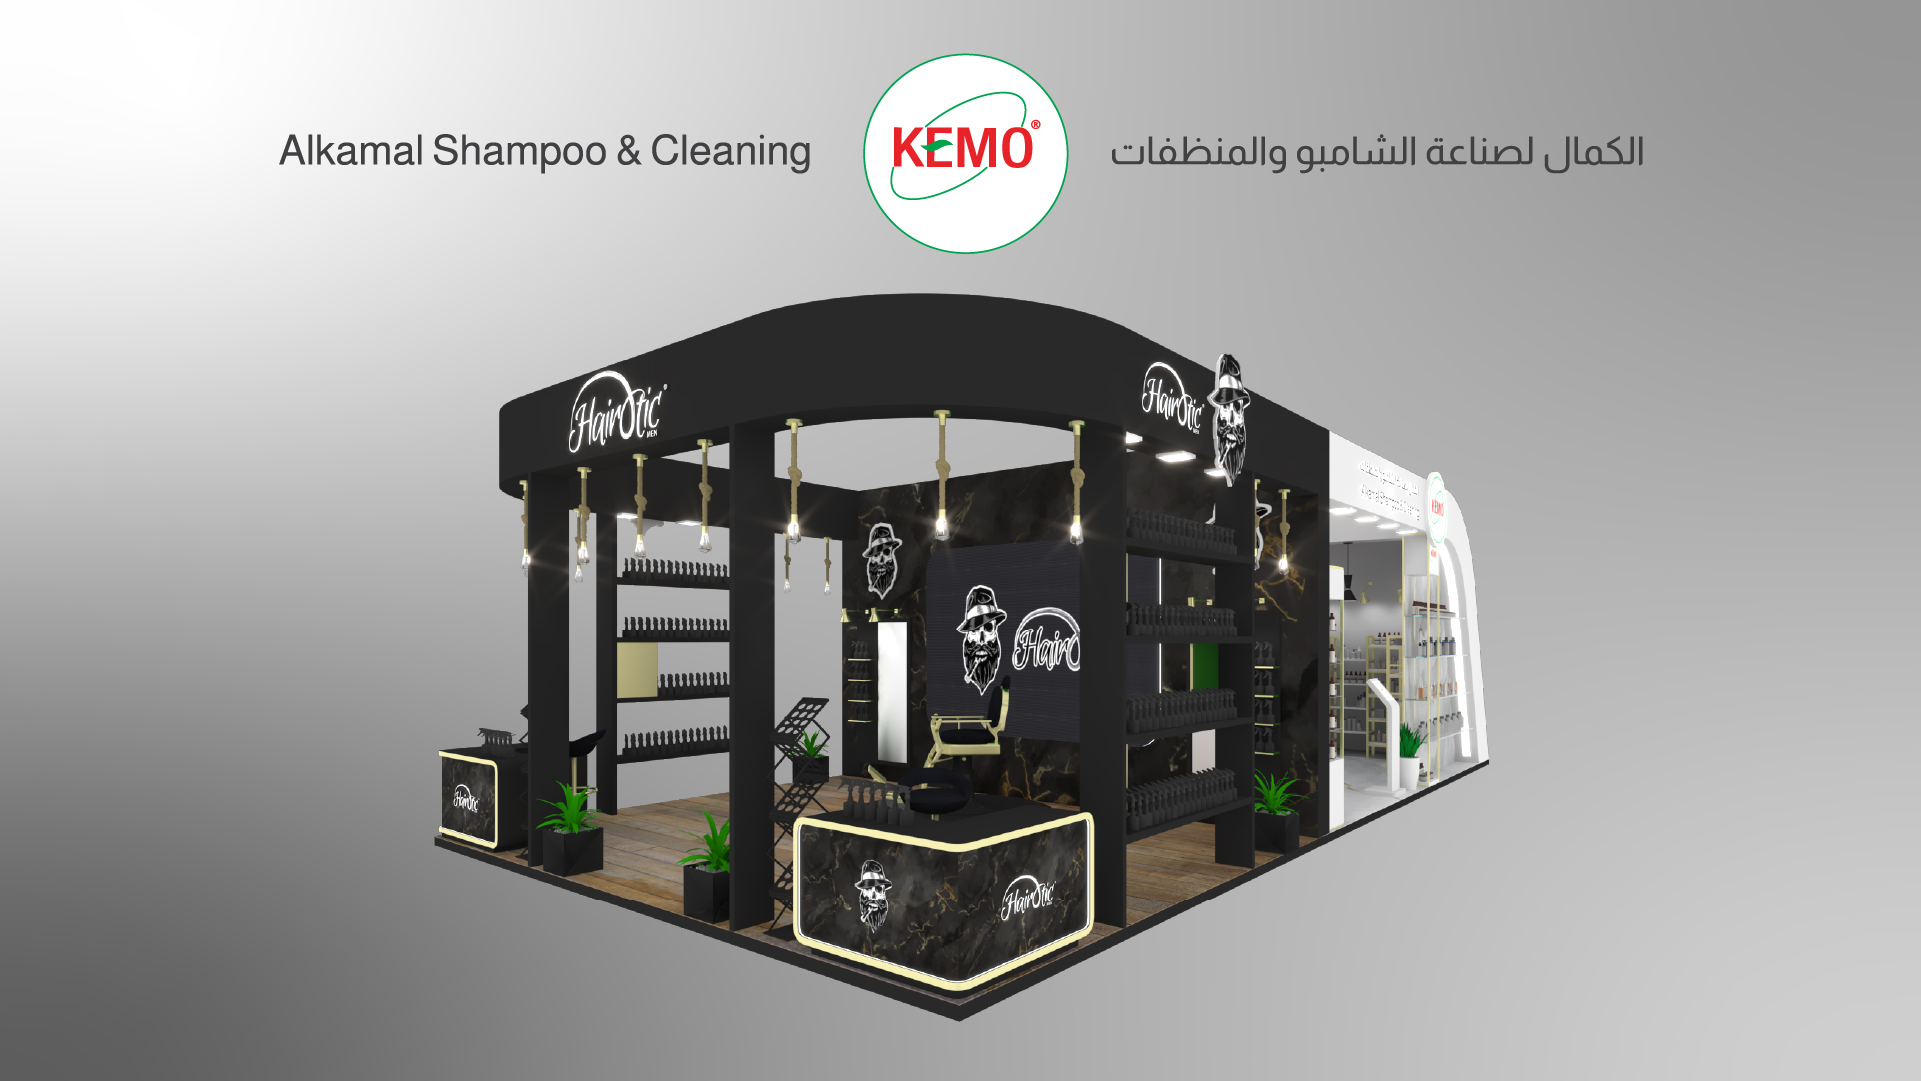 KEMO - AL Kamal Shampoo & Cleaning